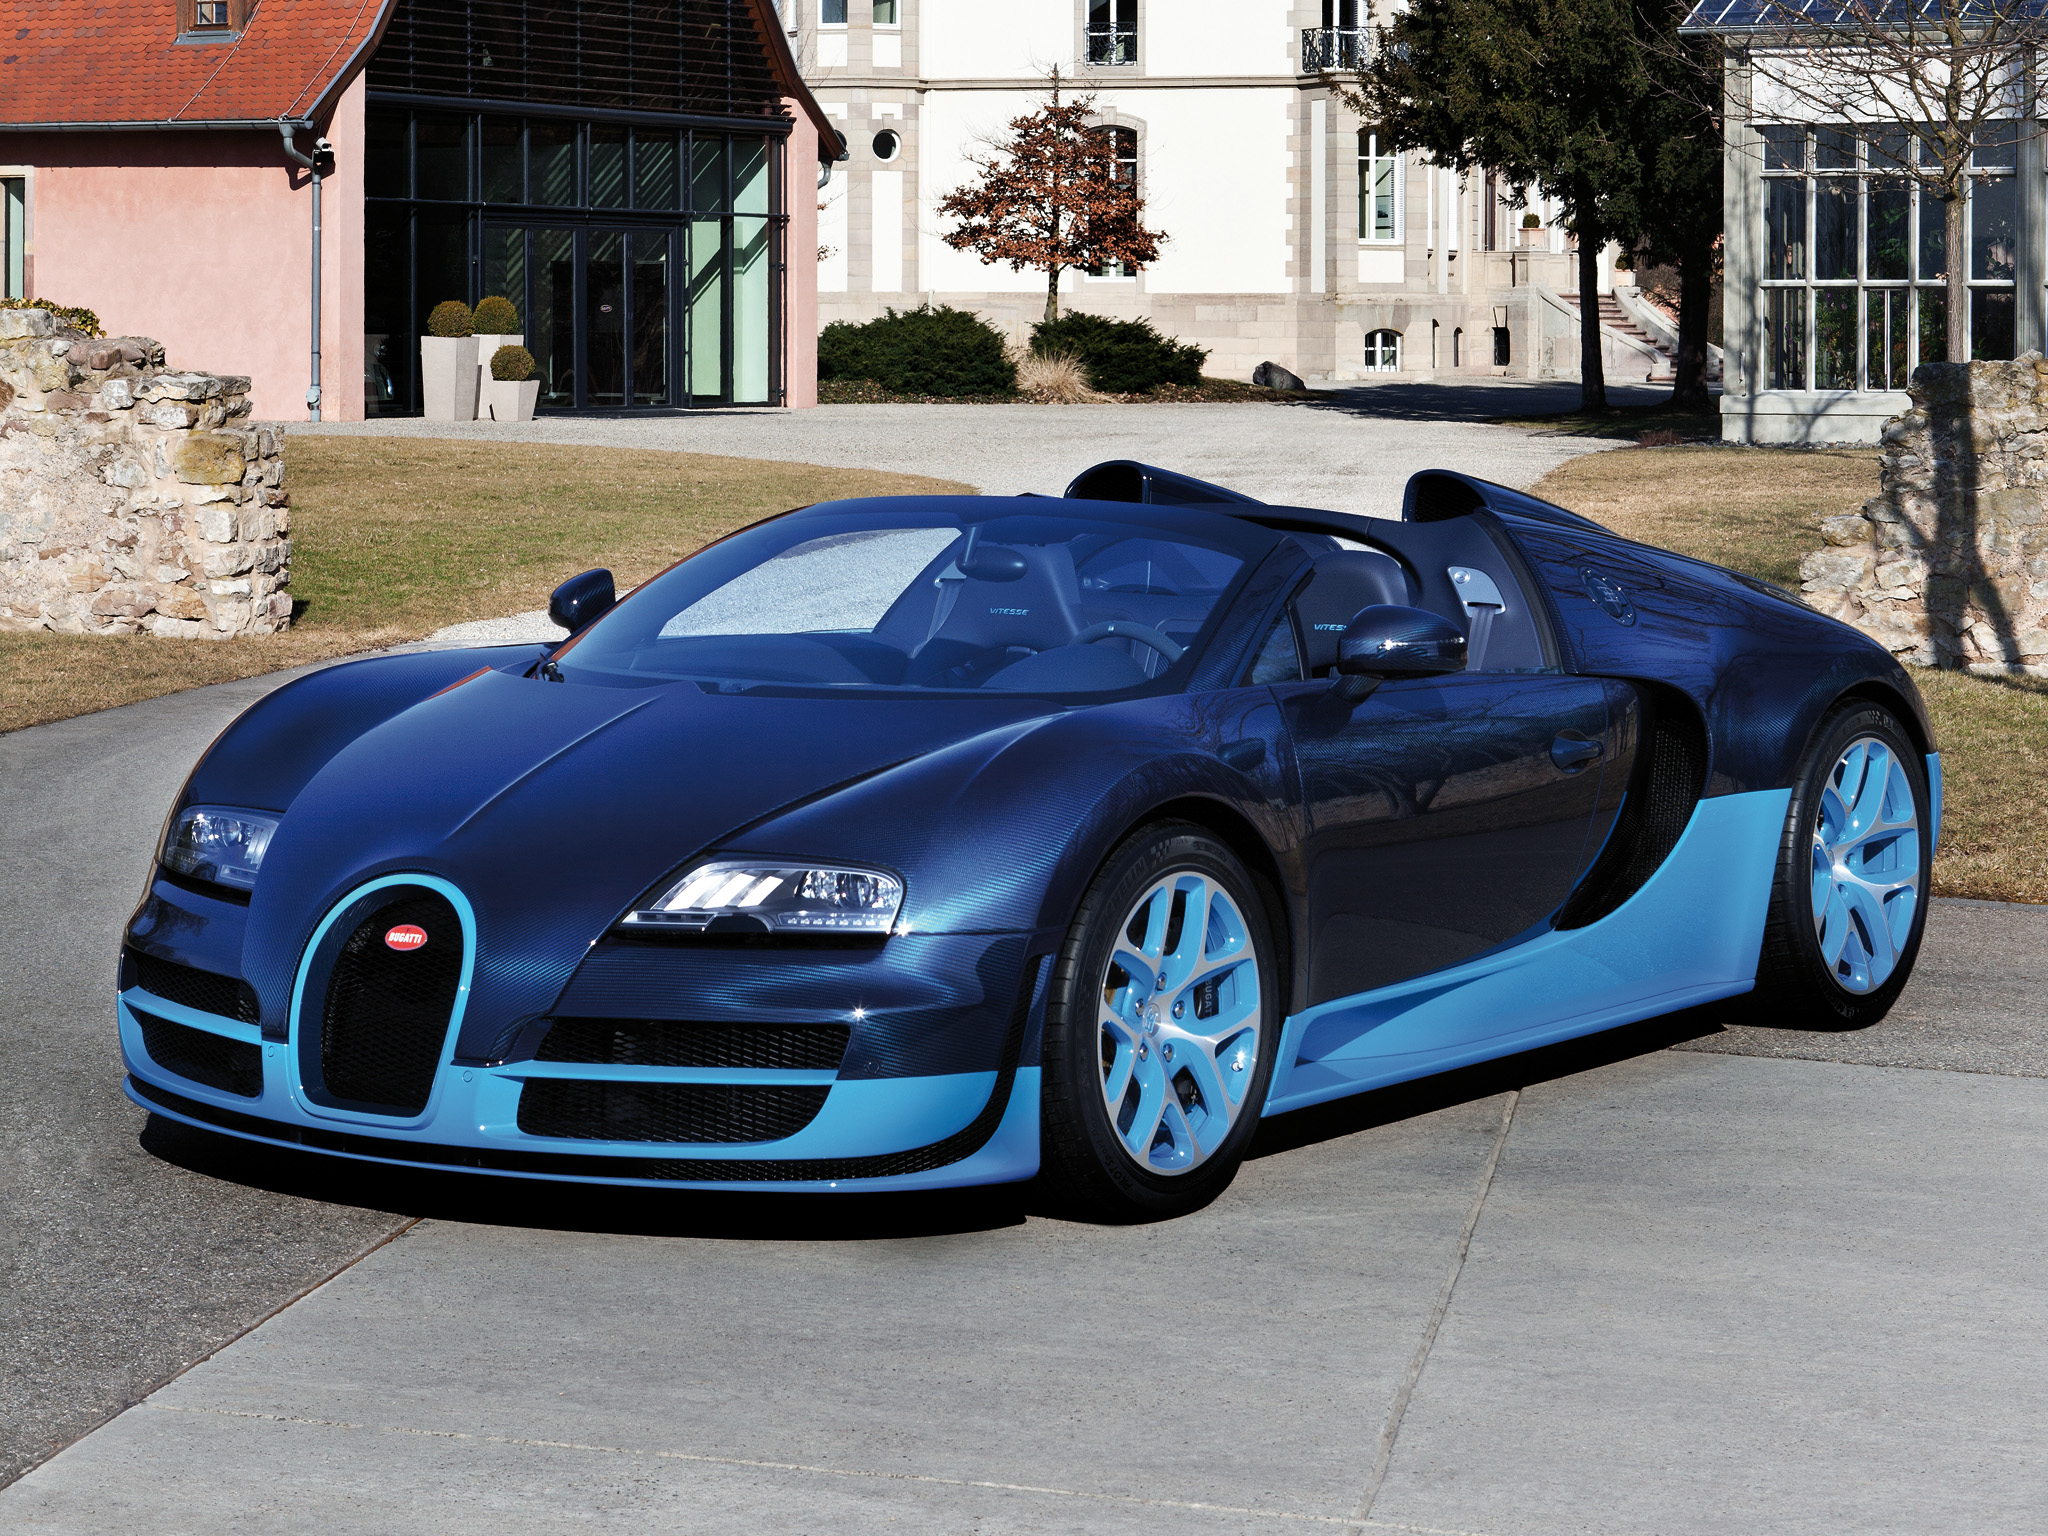 Bugatti 12